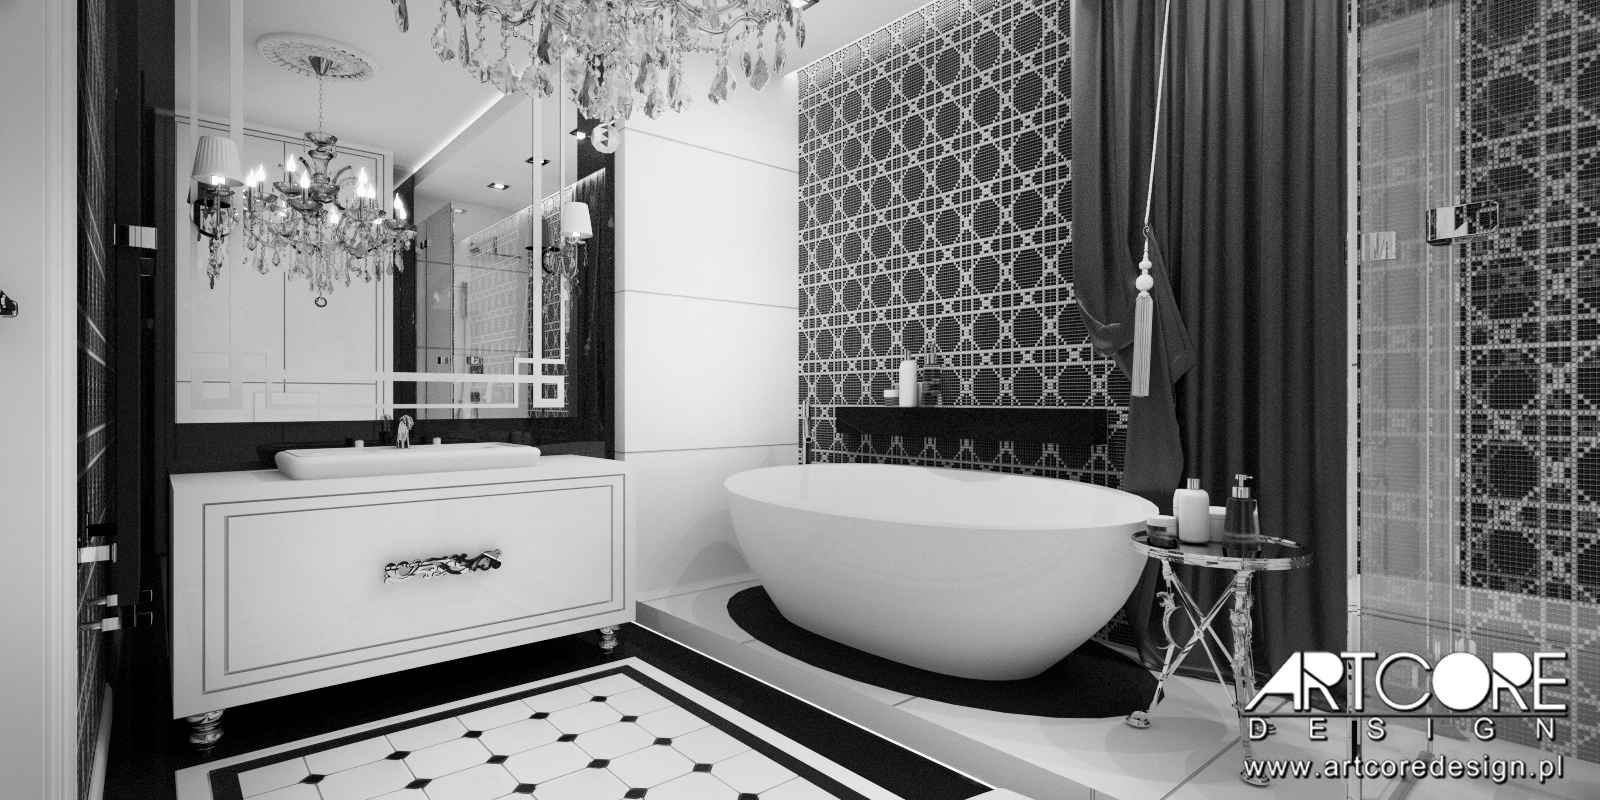 Черно белый цвет в ванной. Ванна в черно-белых тонах. Черно белая плитка. Ванна в черно белом стиле. Ванная комната в черно белом стиле.